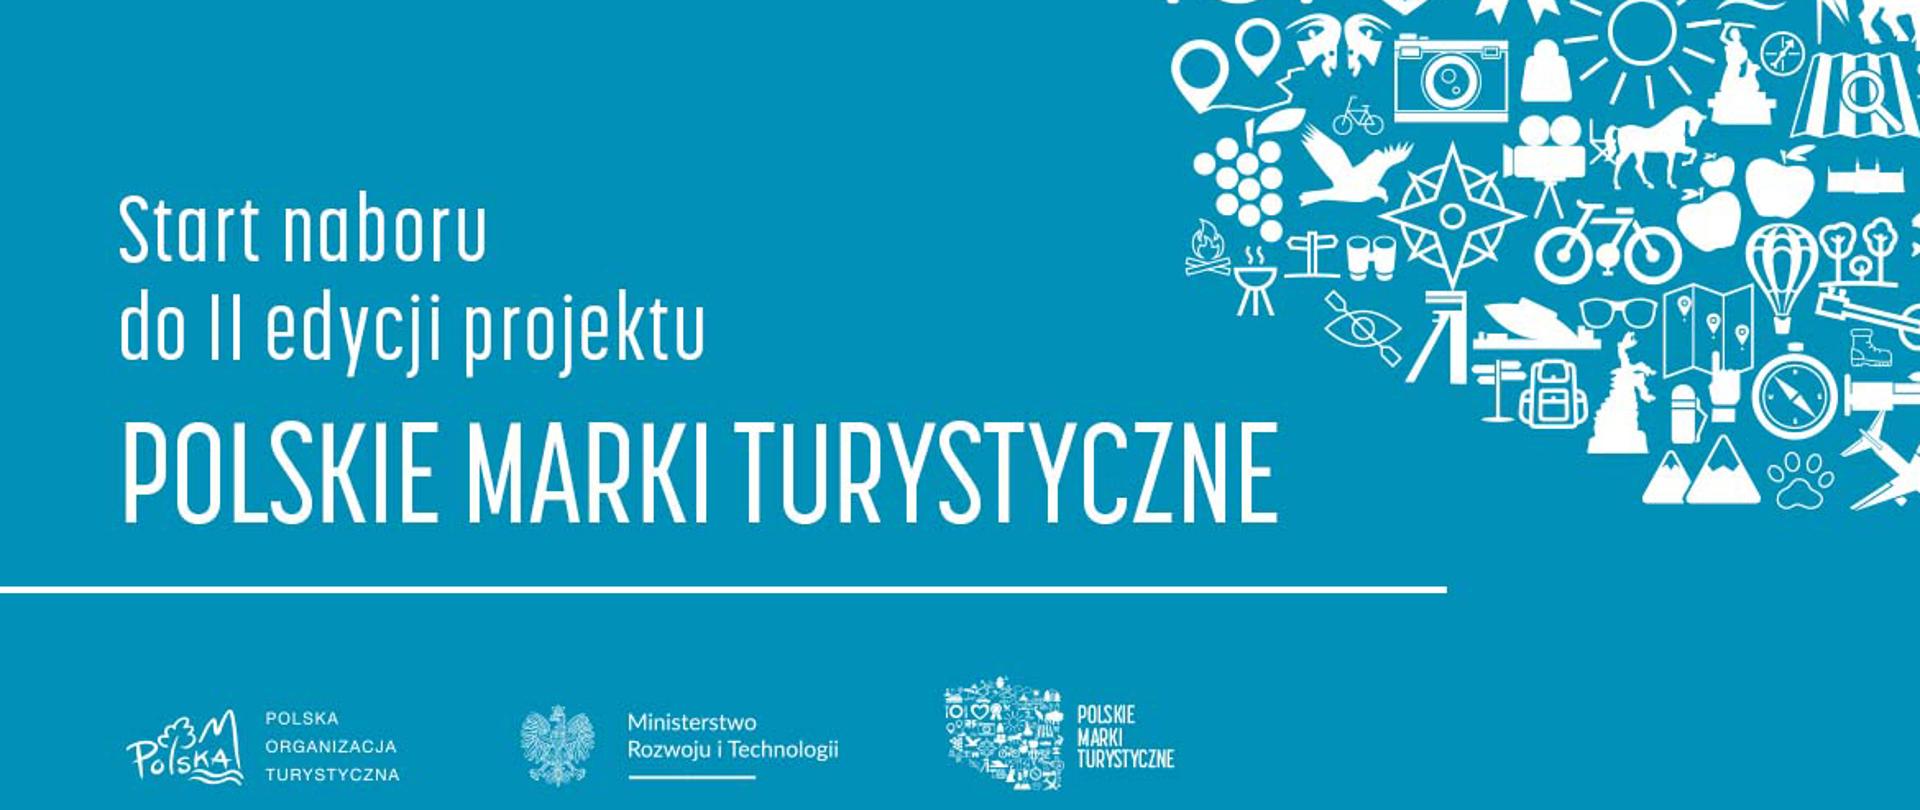 Logotyp konkursu Polskie Marki Turystyczne